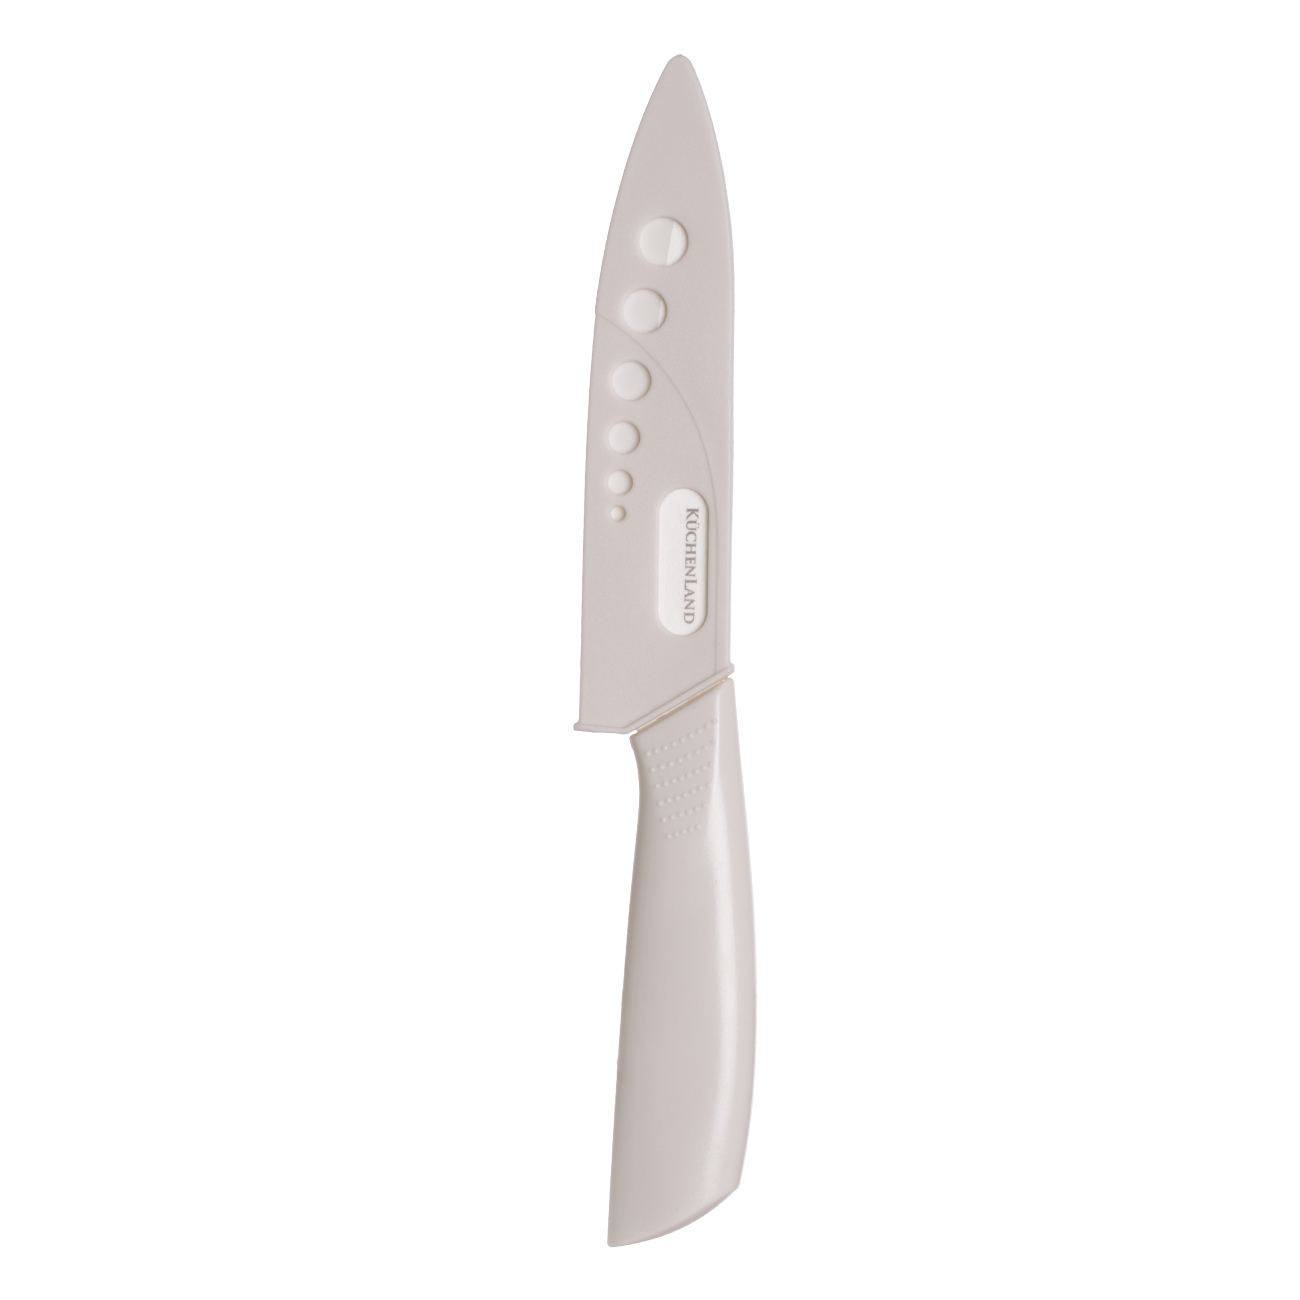 Нож для нарезки, 15 см, с чехлом, керамика/пластик, молочный, Regular изображение № 2